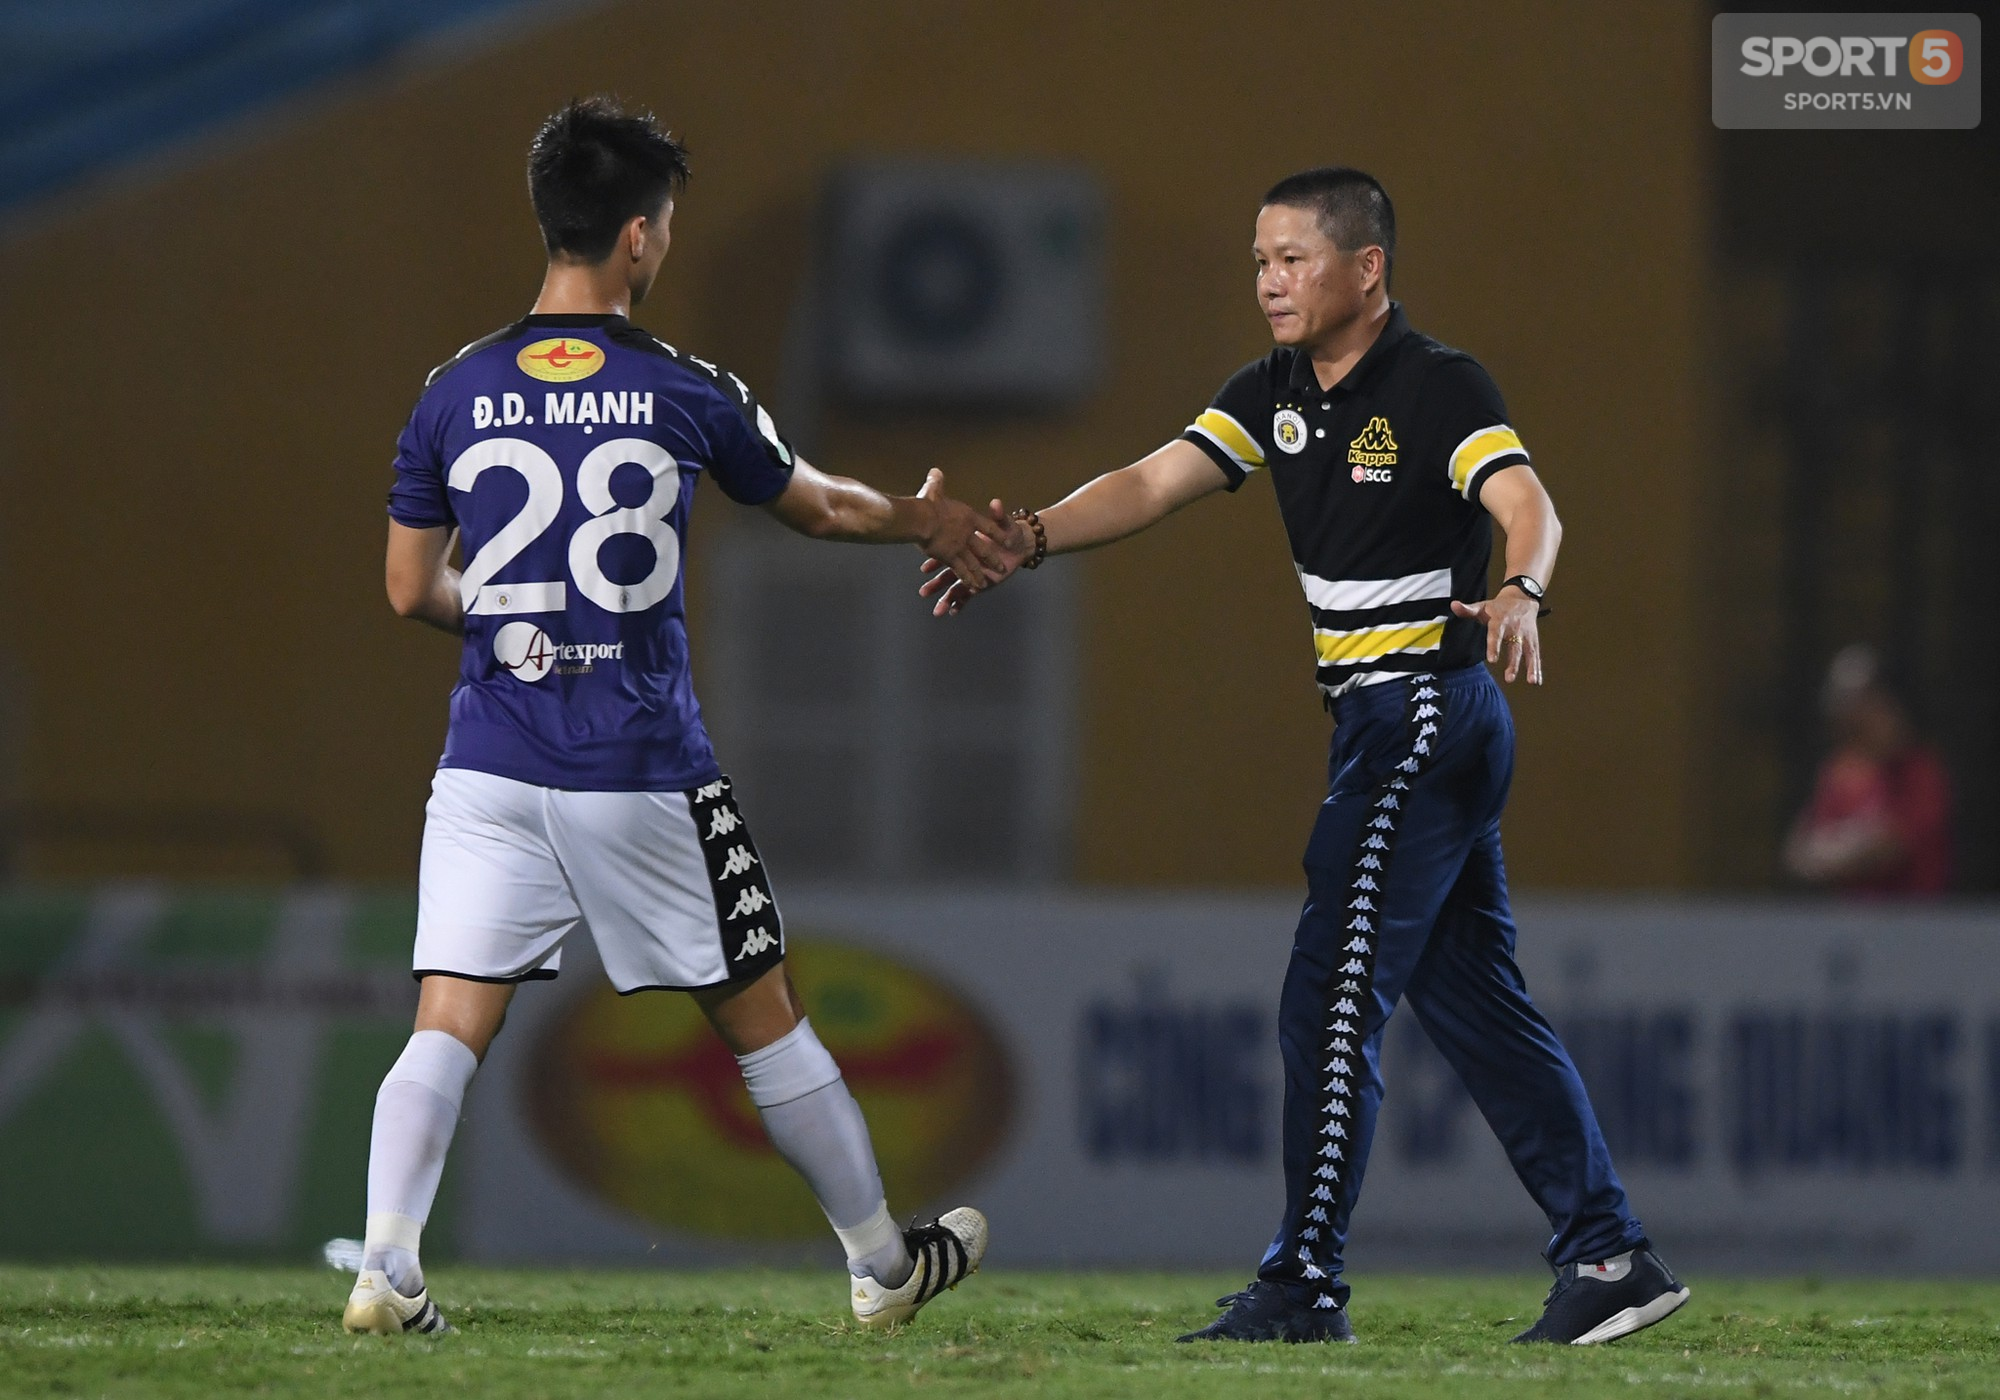 HLV Chu Đình Nghiêm tiết lộ 2 nguyên nhân khiến Hà Nội FC thua trận trước Sài Gòn FC - Ảnh 3.